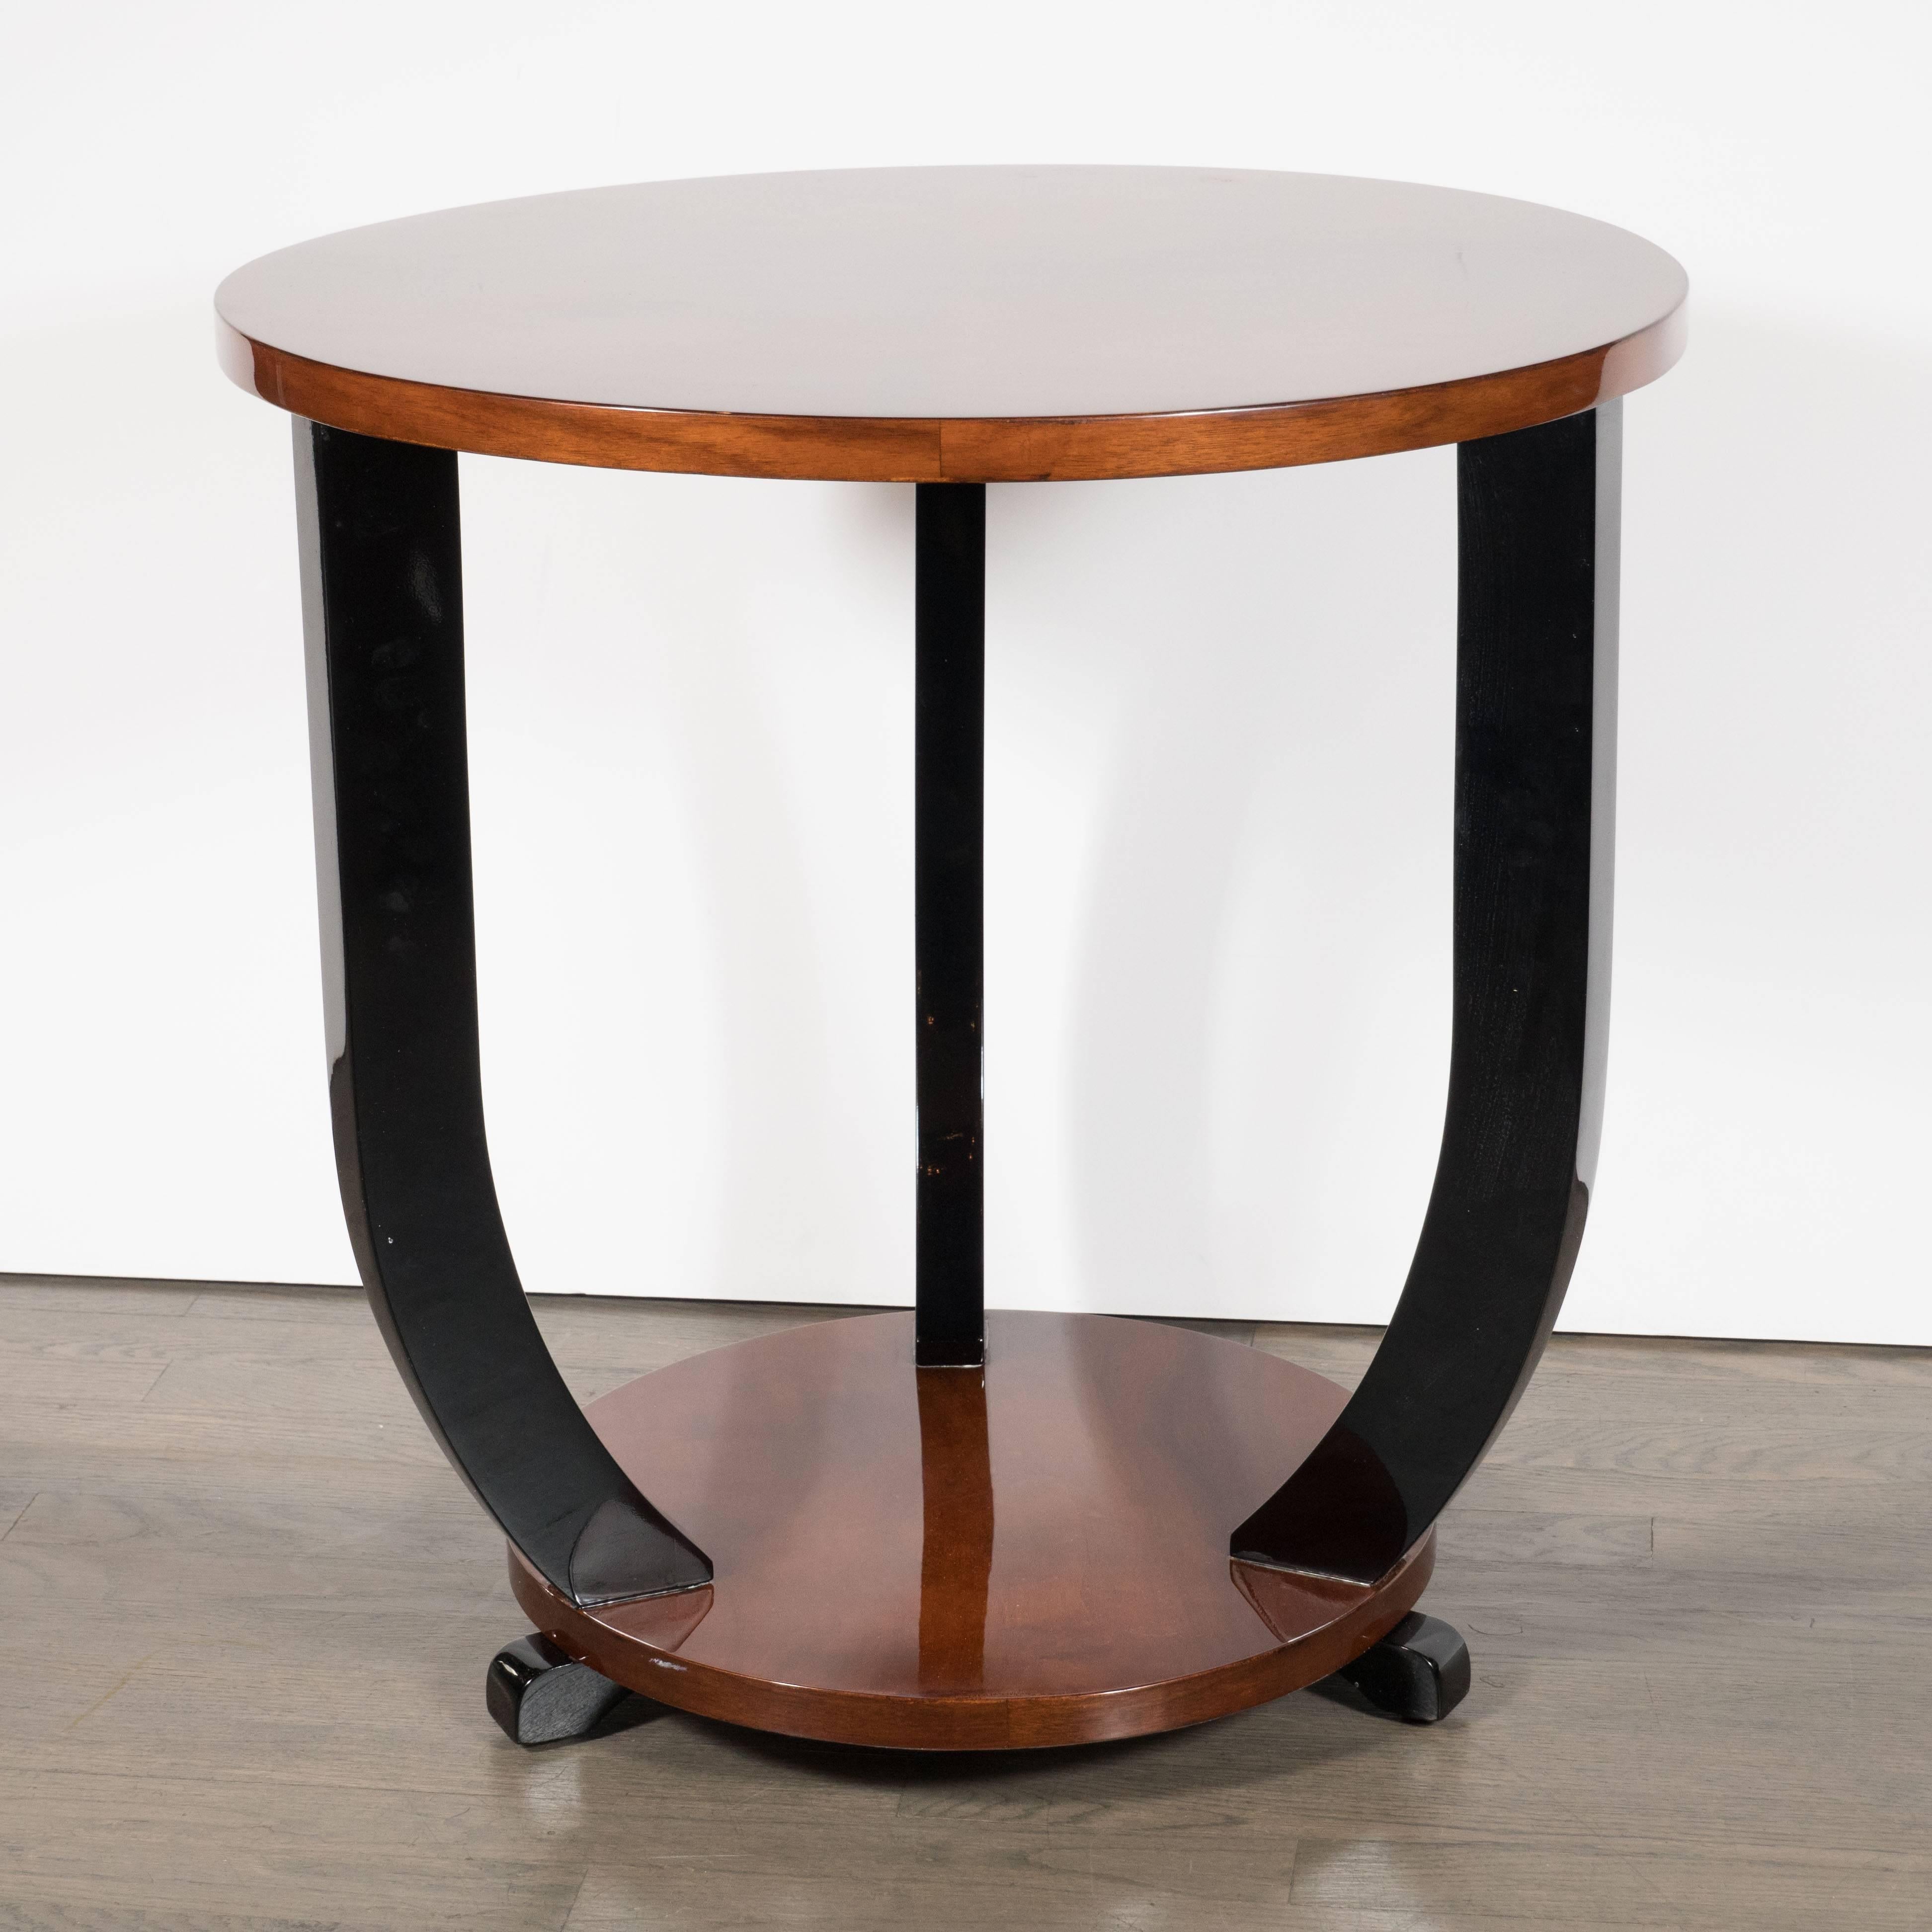 Cette étonnante table de guéridon Art déco a été réalisée en France, vers 1935. Il se compose de deux plateaux ronds en noyer assortis reliés par des supports courbes en laque noire. Les pieds en forme de volute, exécutés en laque noire, s'élèvent